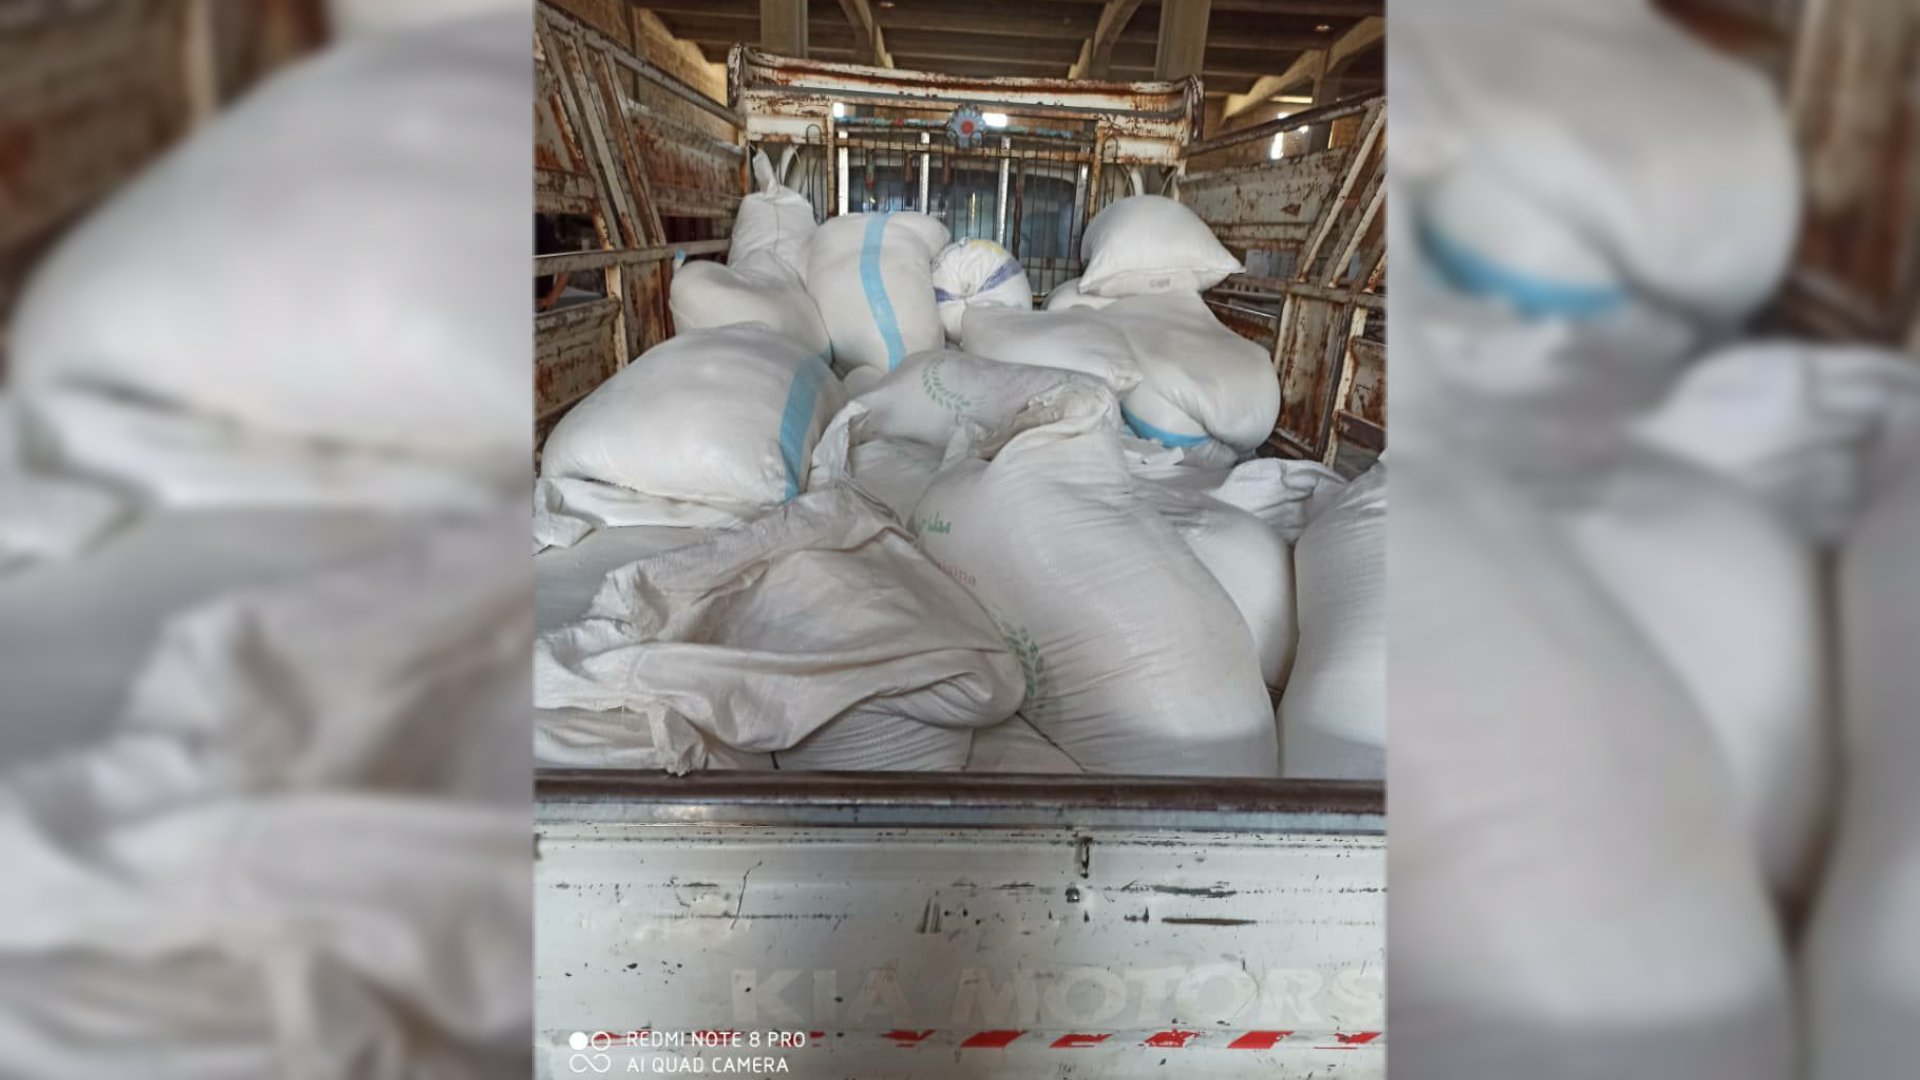 ضبط 2 طن من الدقيق التمويني وما يقارب 3 طن من القمح بهدف الاتجار بها بالسوق السوداء بديرالزور